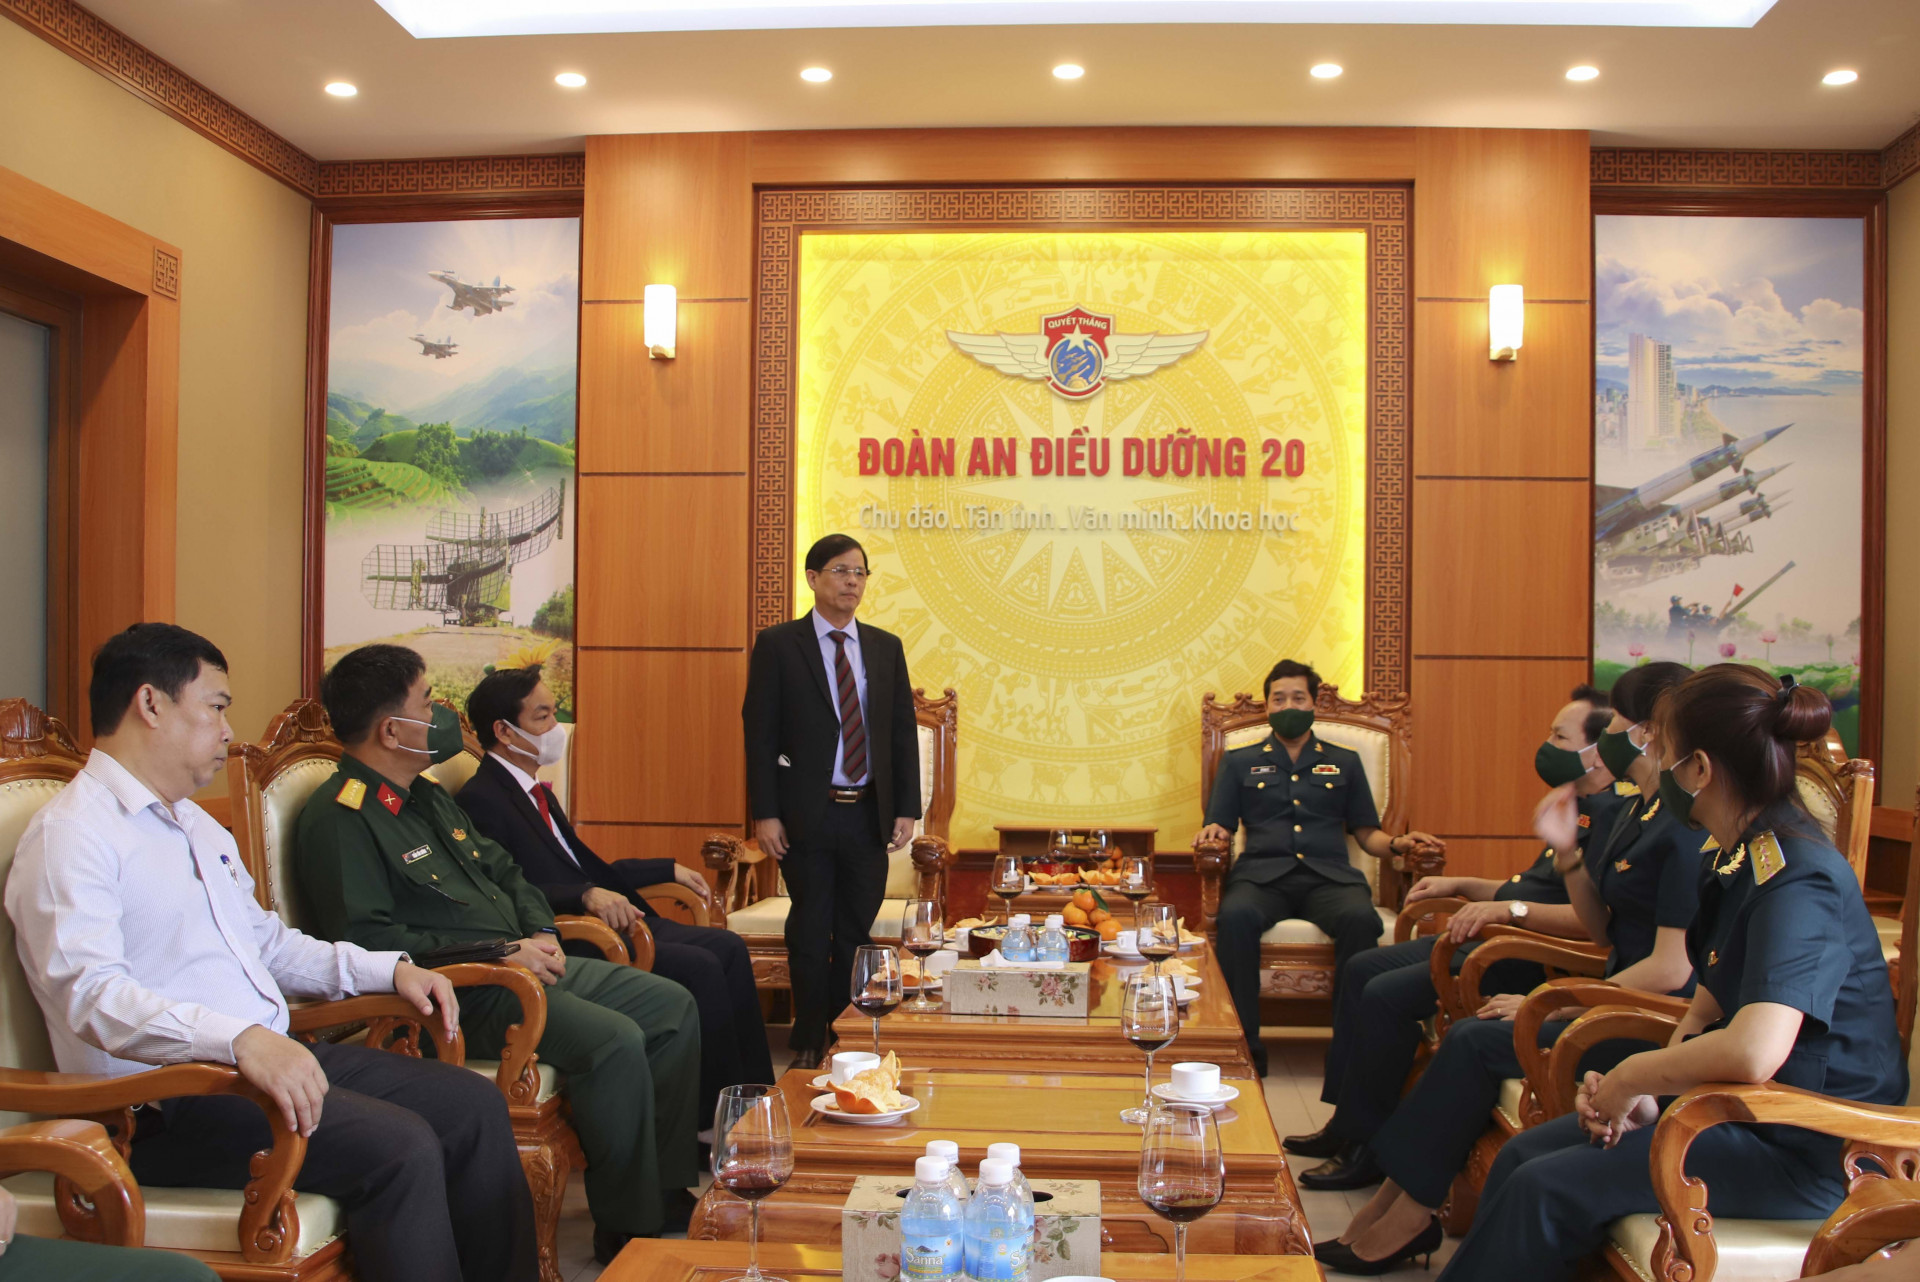 Ông Nguyễn Tấn Tuân thăm và chúc mừng cán bộ, chiến sĩ Đoàn An điều dưỡng 20.